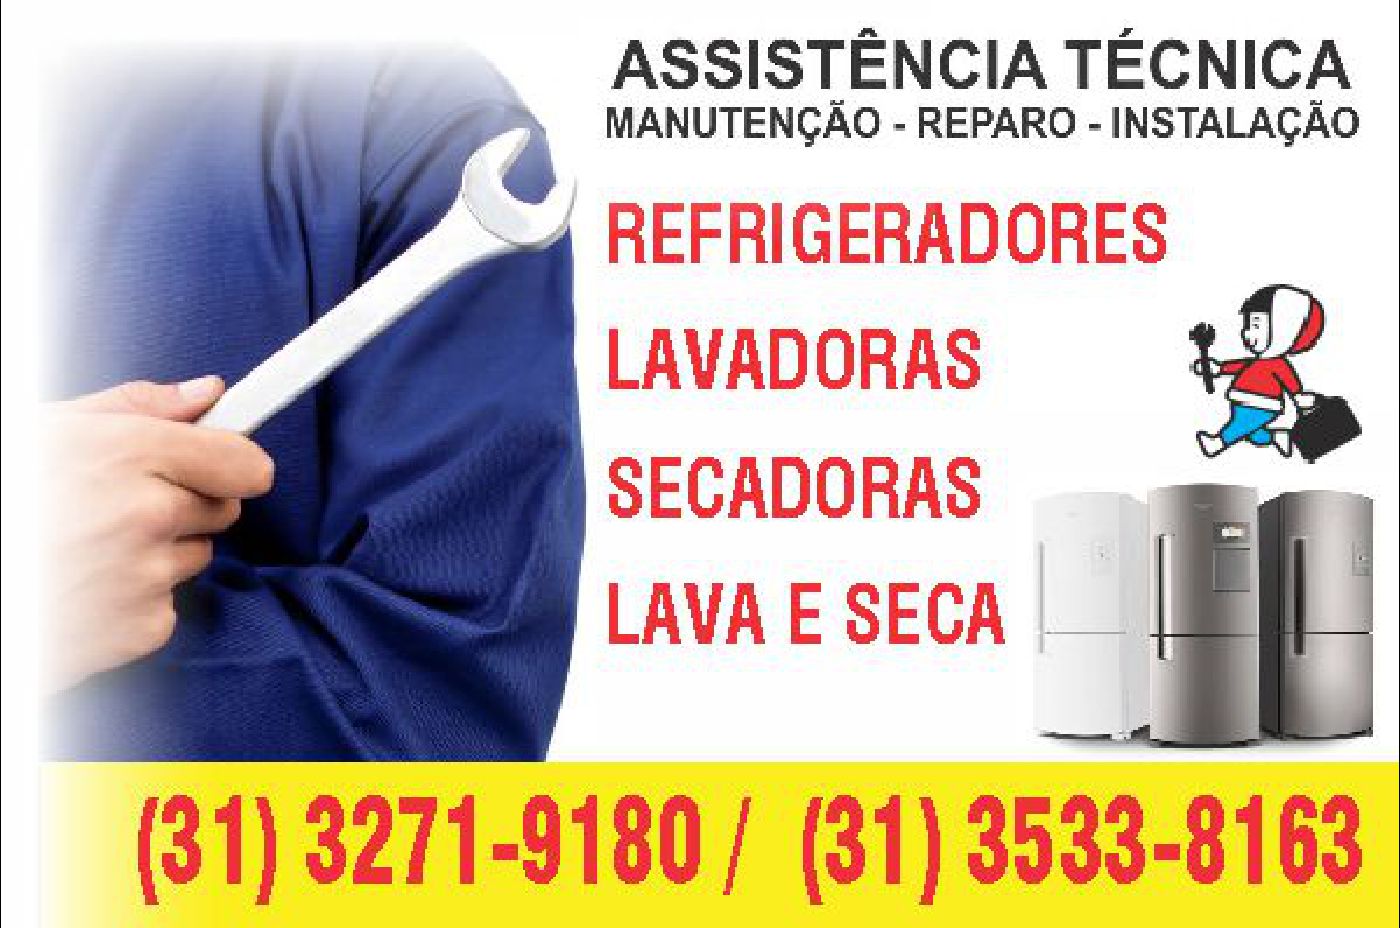 Assistência técnica de Eletrodomésticos em Belo Horizonte - (31) 3271-9180 | (31) 3533-8163